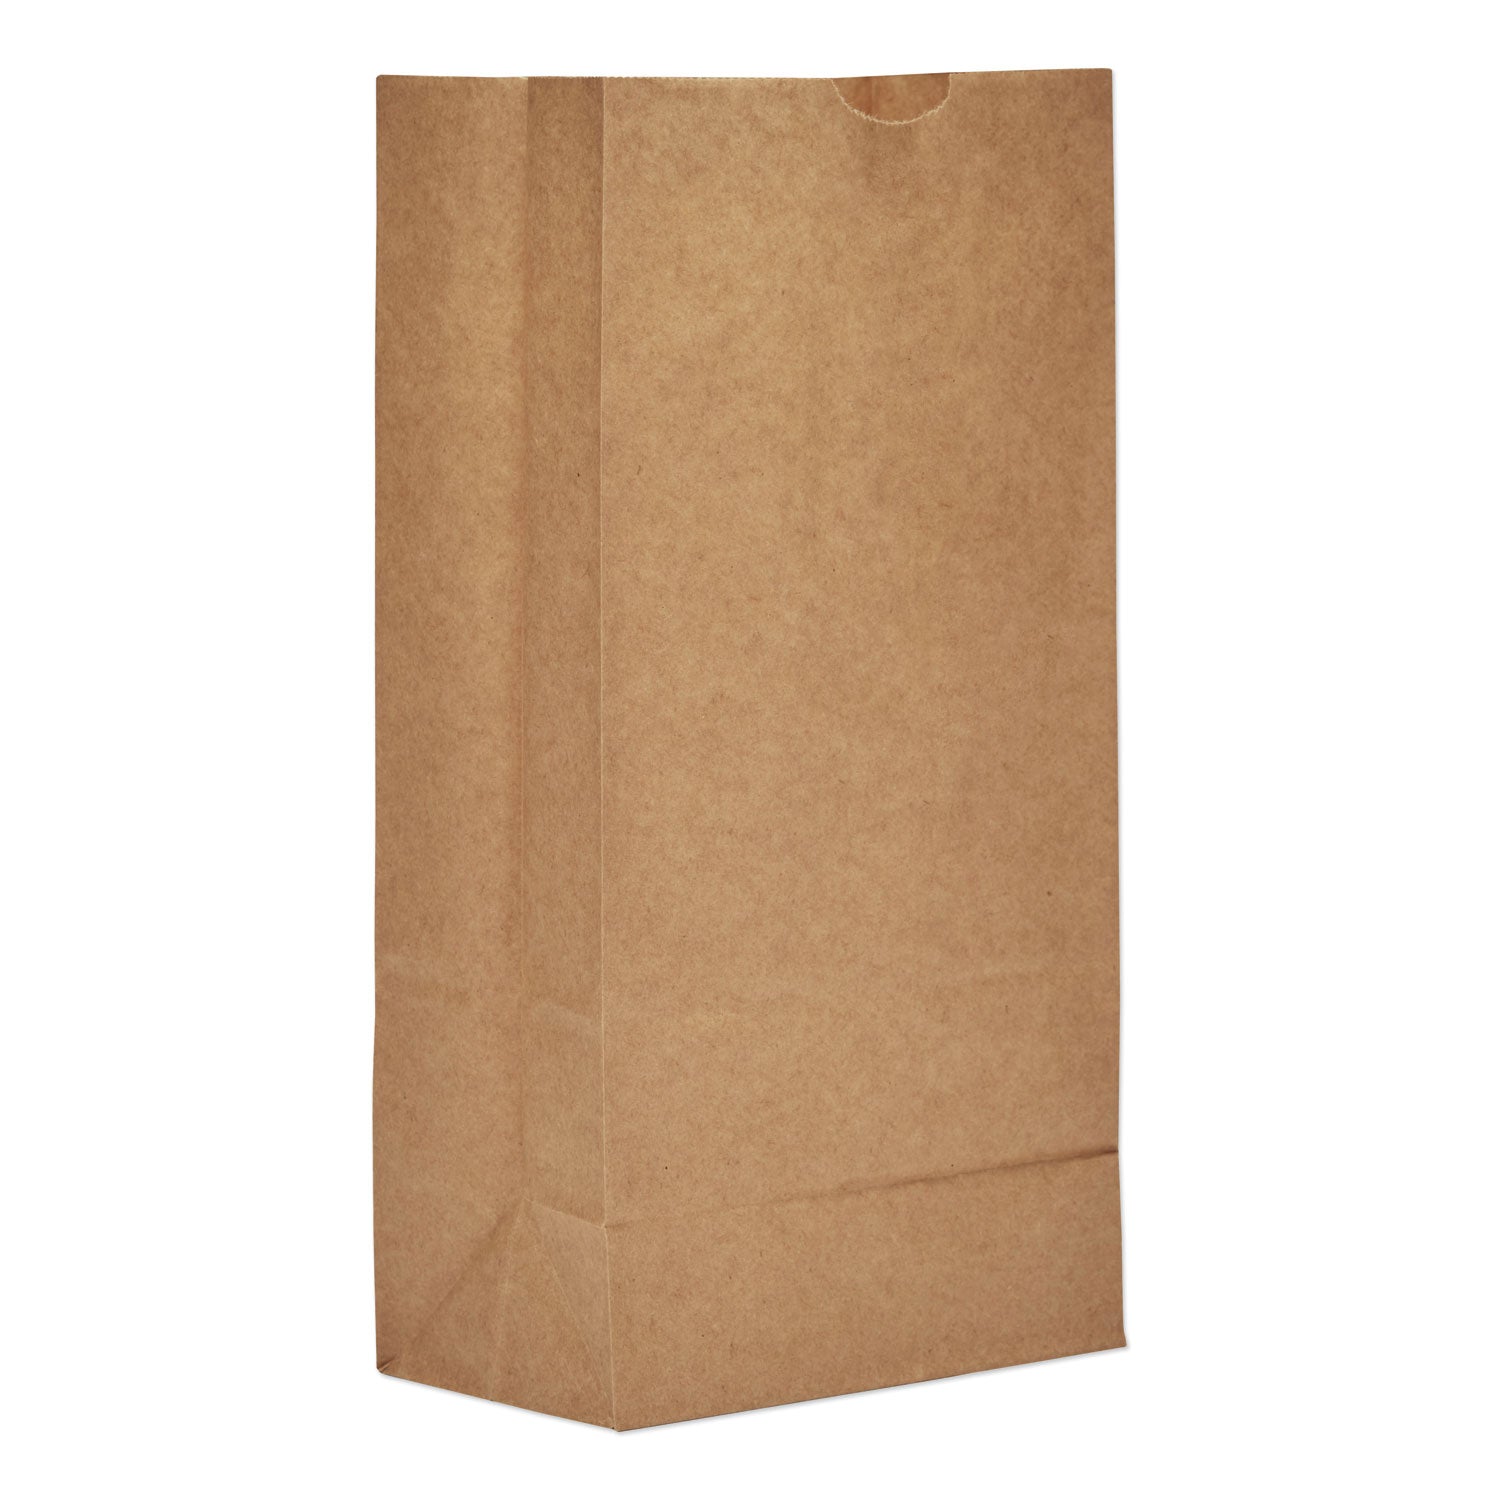 grocery-paper-bags-35-lb-capacity-#8-613-x-417-x-1244-kraft-500-bags_baggk8500 - 1